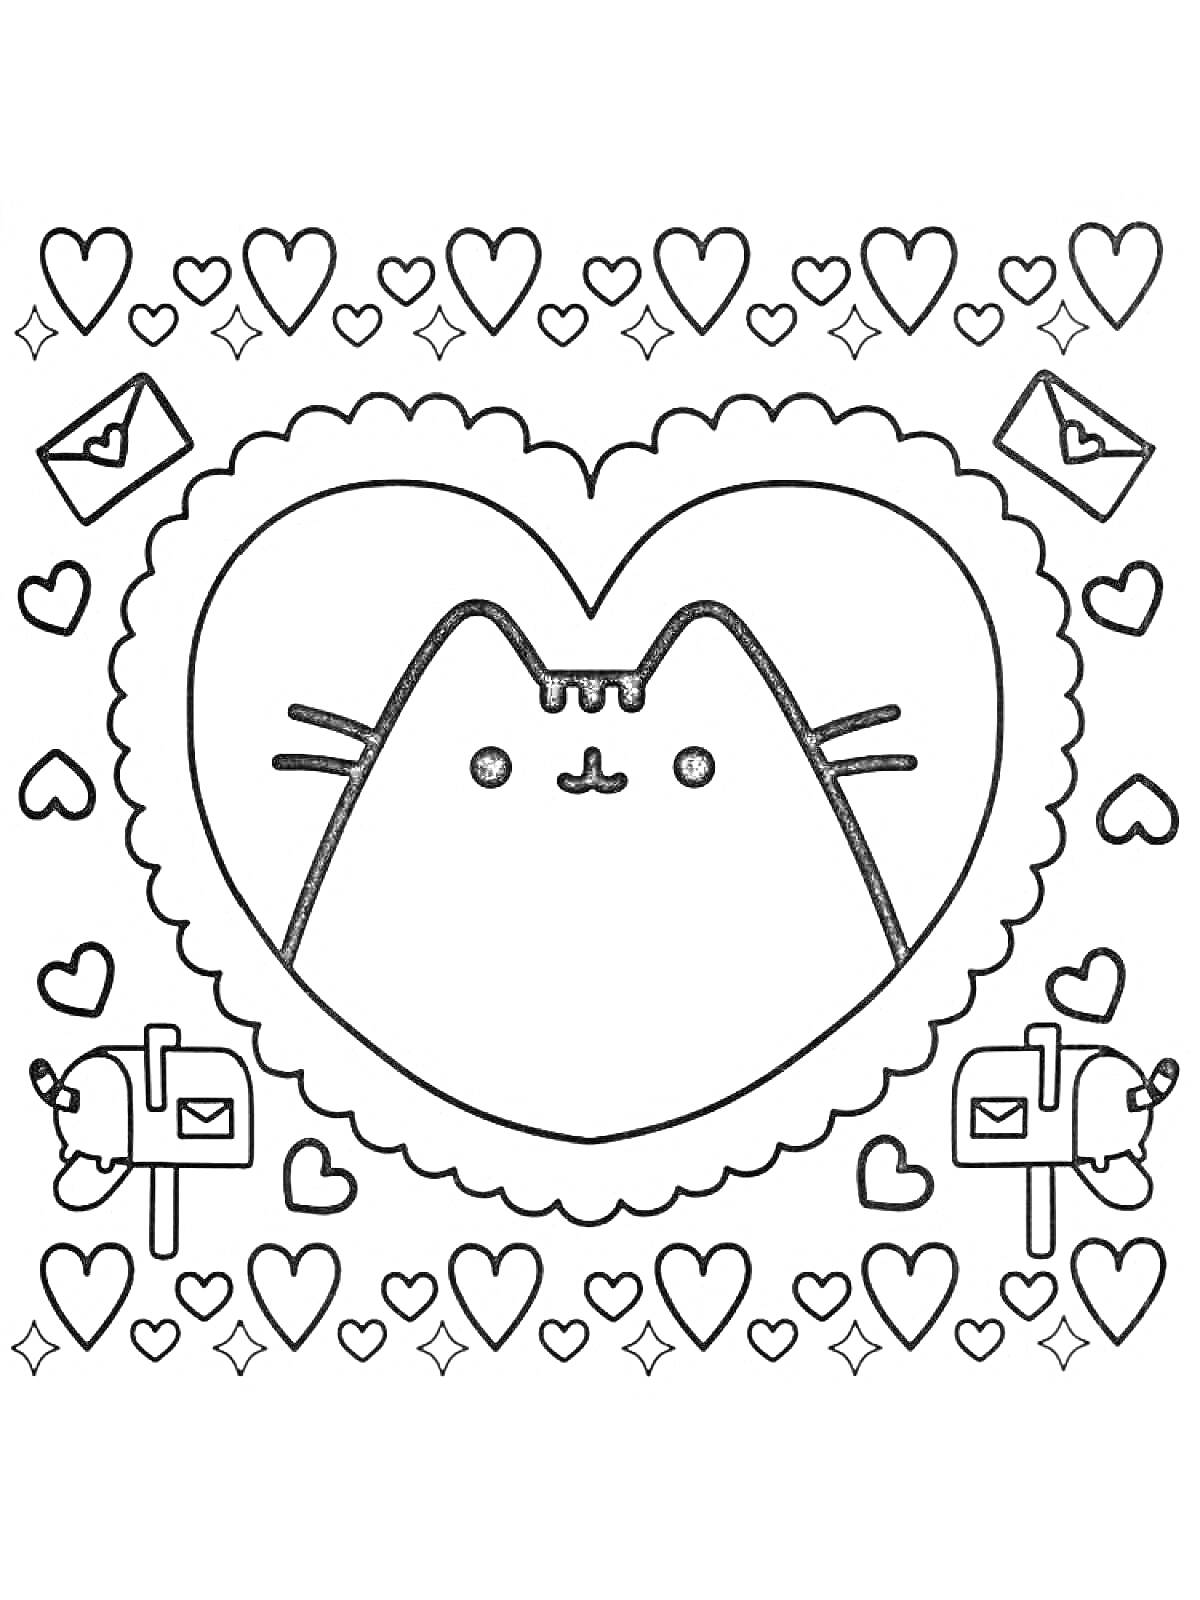 Раскраска Кот Пушин в сердце с конвертами, почтовыми ящиками и сердечками